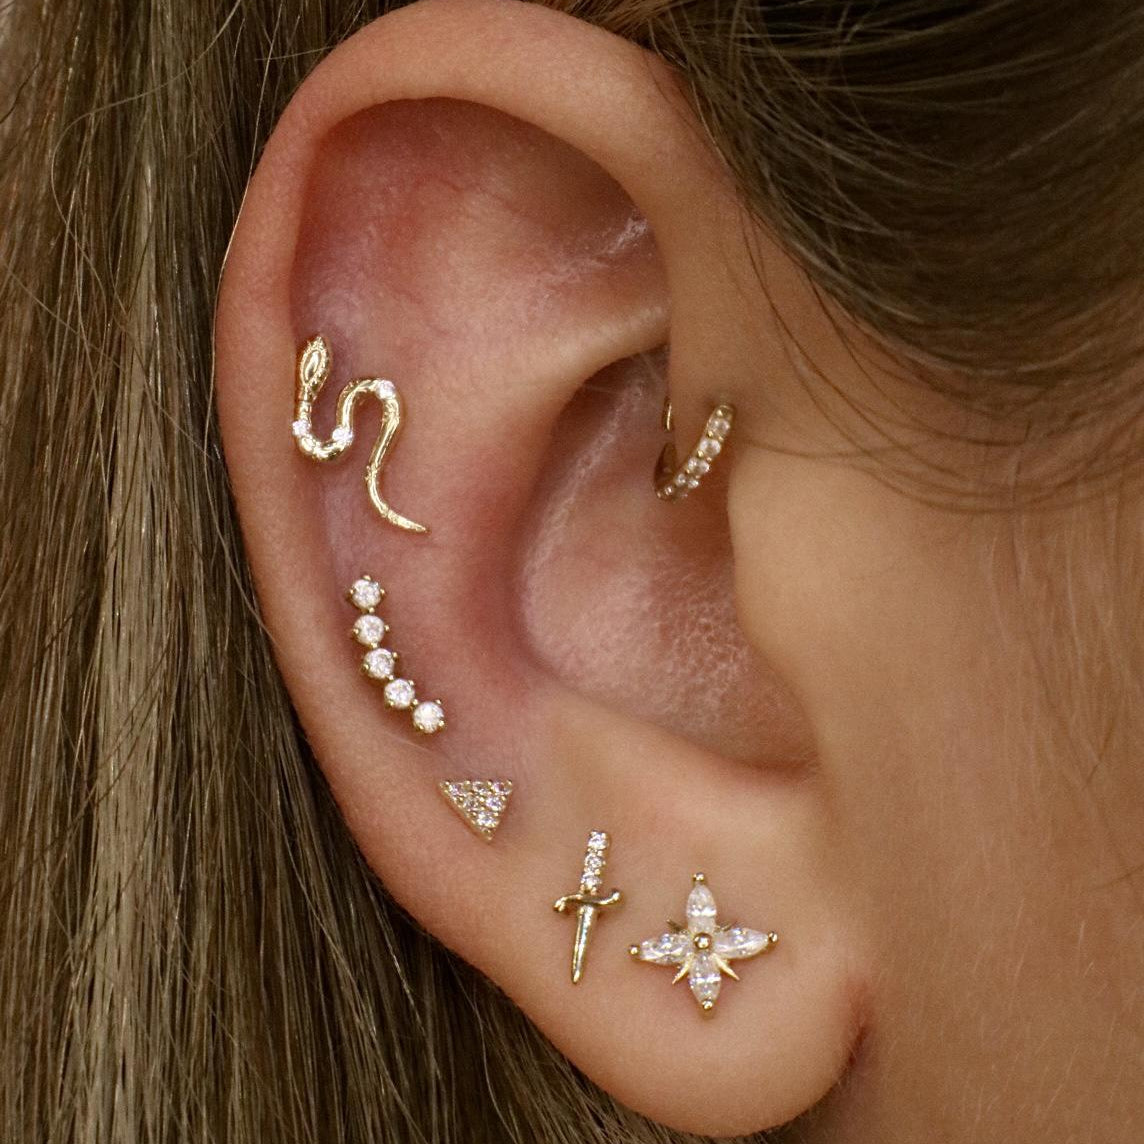 14k Crystal Sword Single Earring - Lulu Ave Body Jewelery